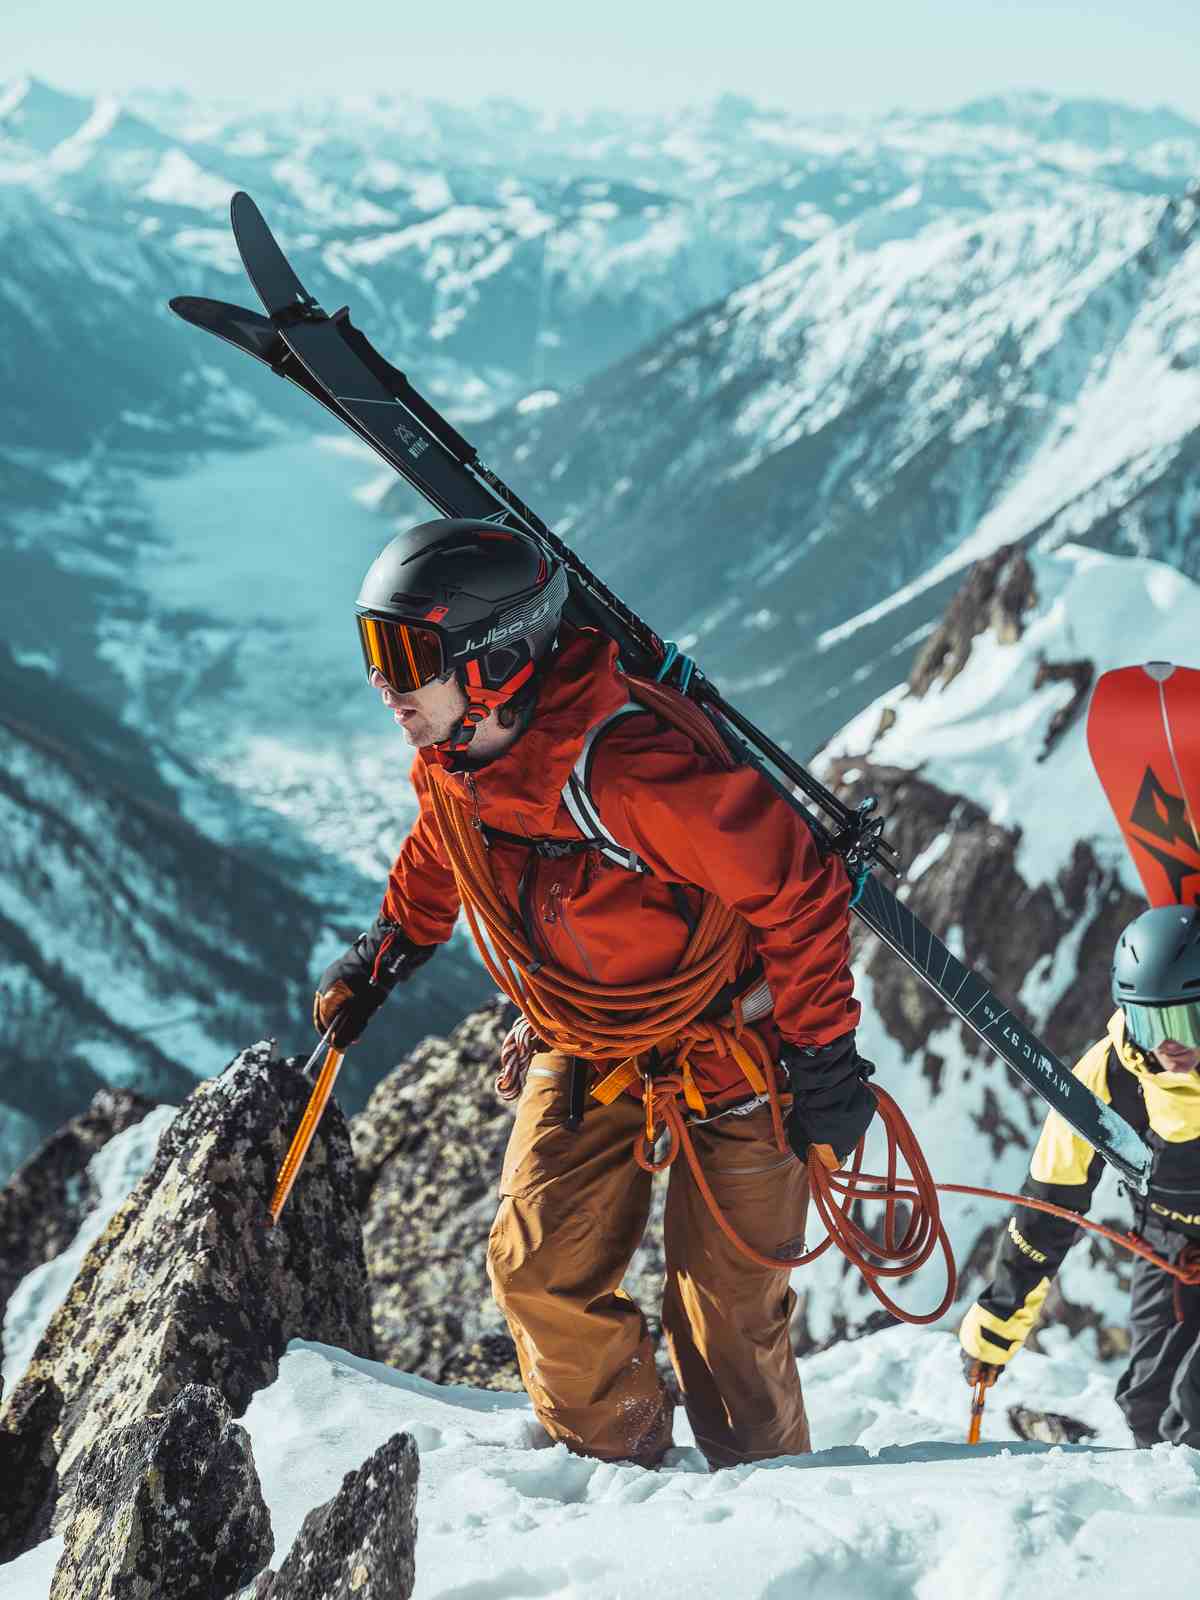 Kask narciarski i alpinistyzcny JULBO THE PEAK - czarny/czerwony